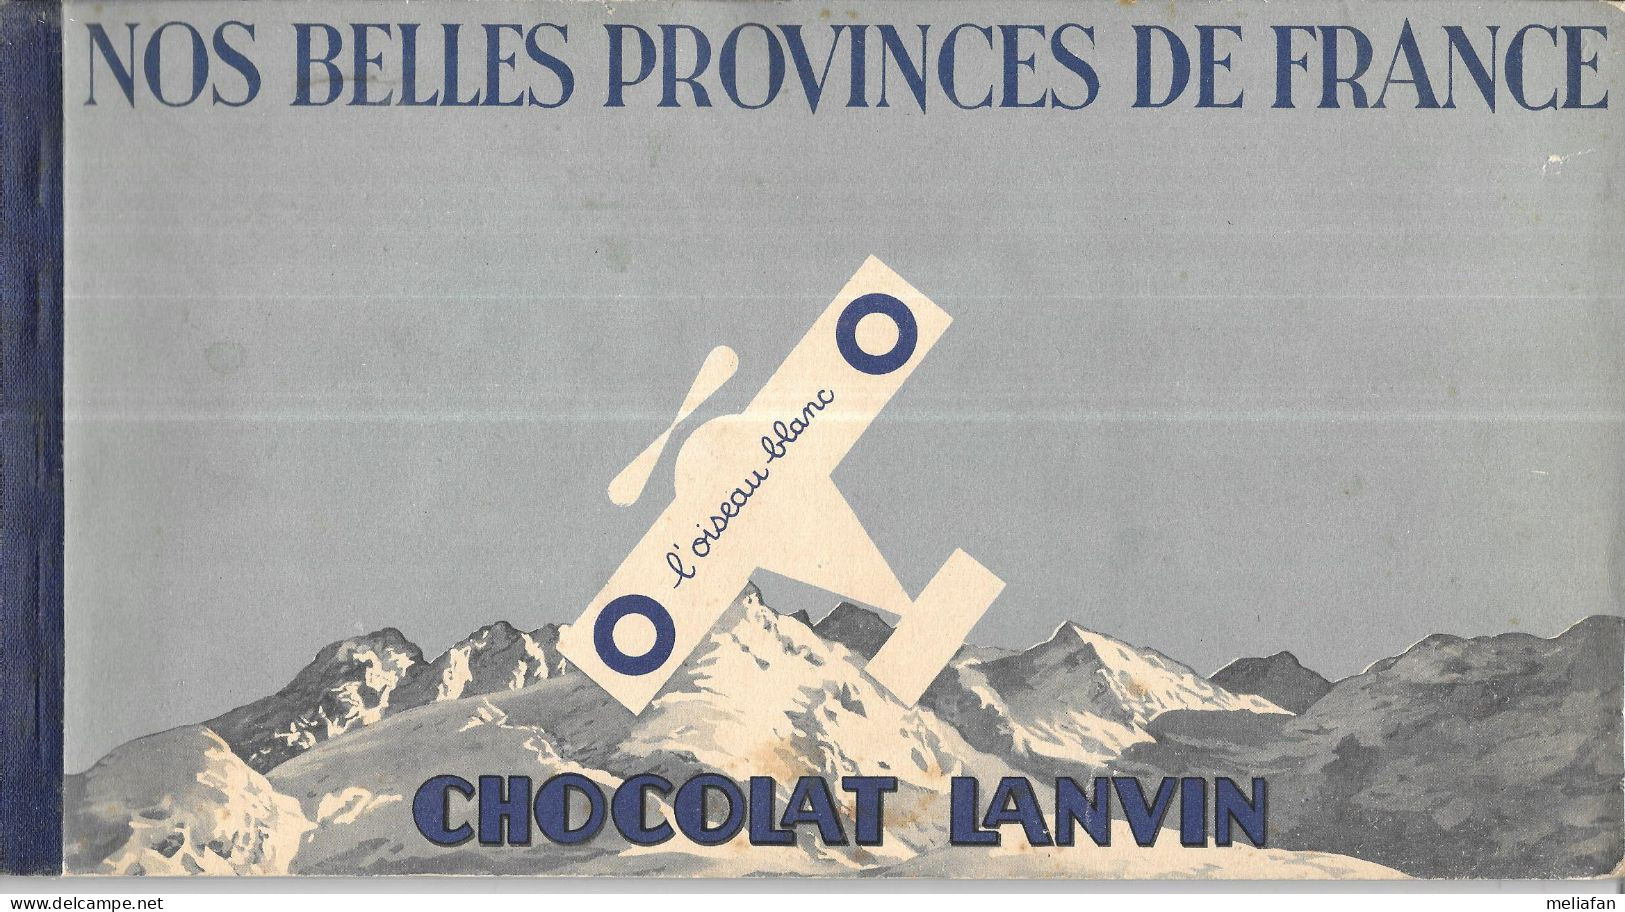 DB09 - ALBUM COLLECTEUR CHOCOLAT LANVIN - NOS BELLES PROVINCES DE FRANCE - OISEAU BLANC - Albumes & Catálogos